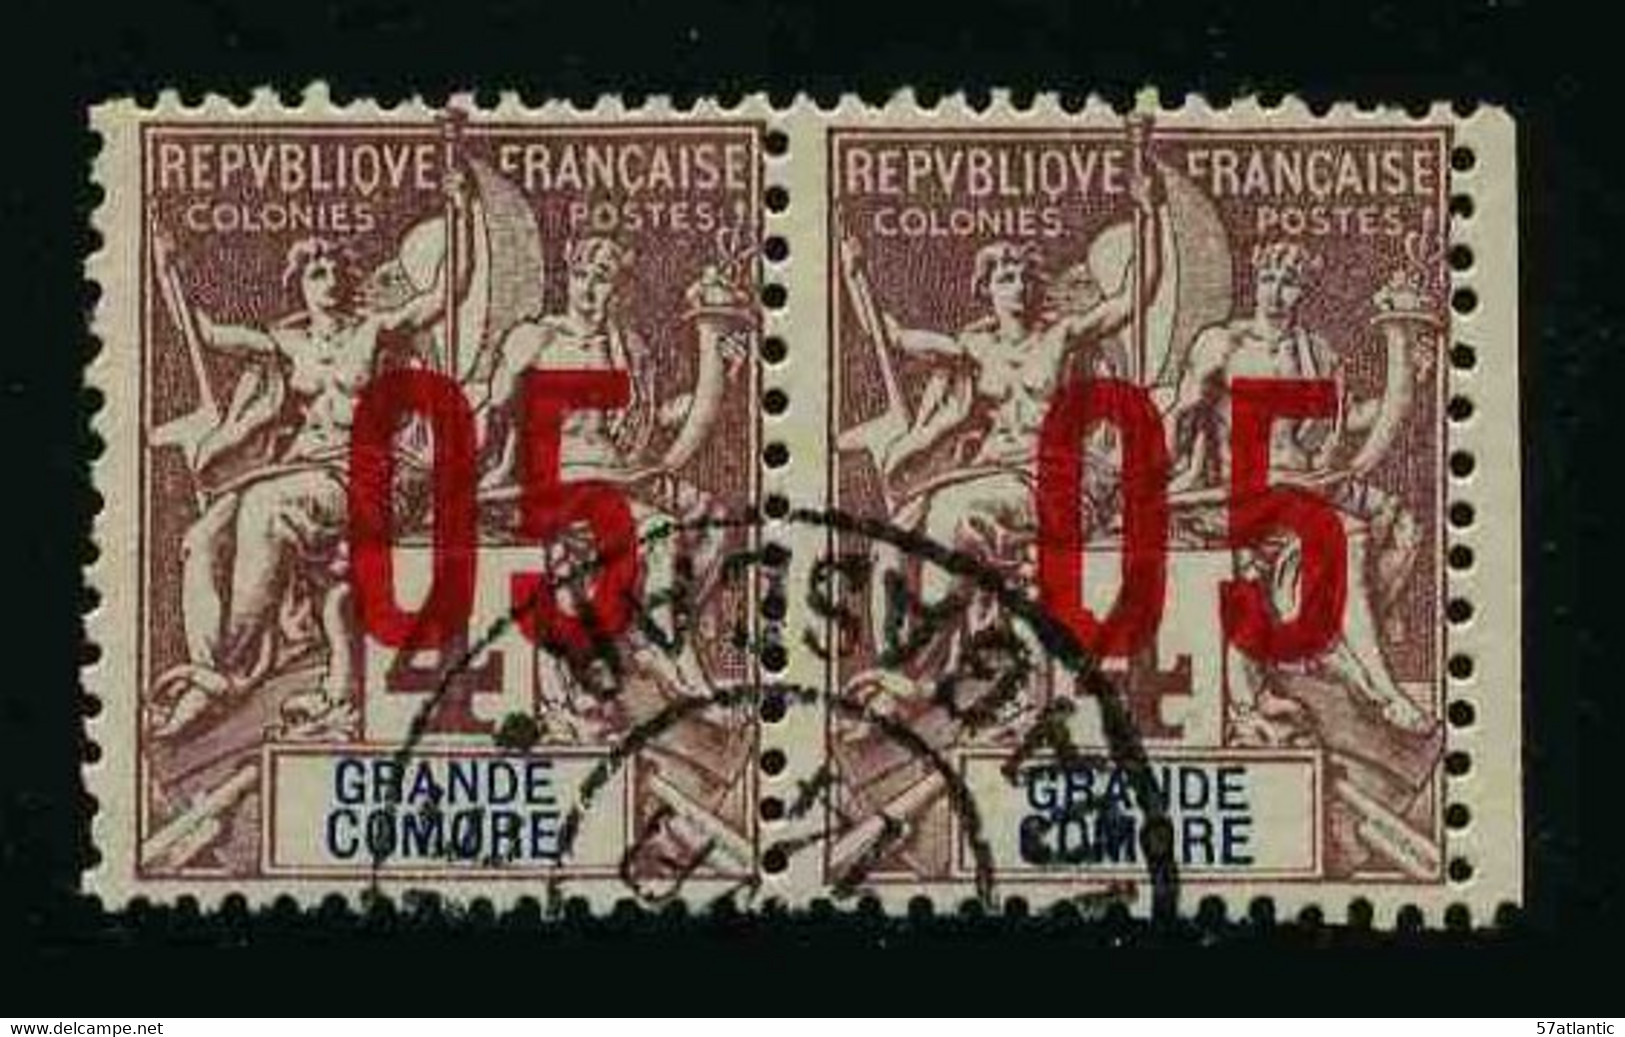 GRANDE COMORE - COLONIE FRANCAISE - YT 21 ET 21A - CHIFFRES ESPACES - TIMBRES OBLITERES - Oblitérés